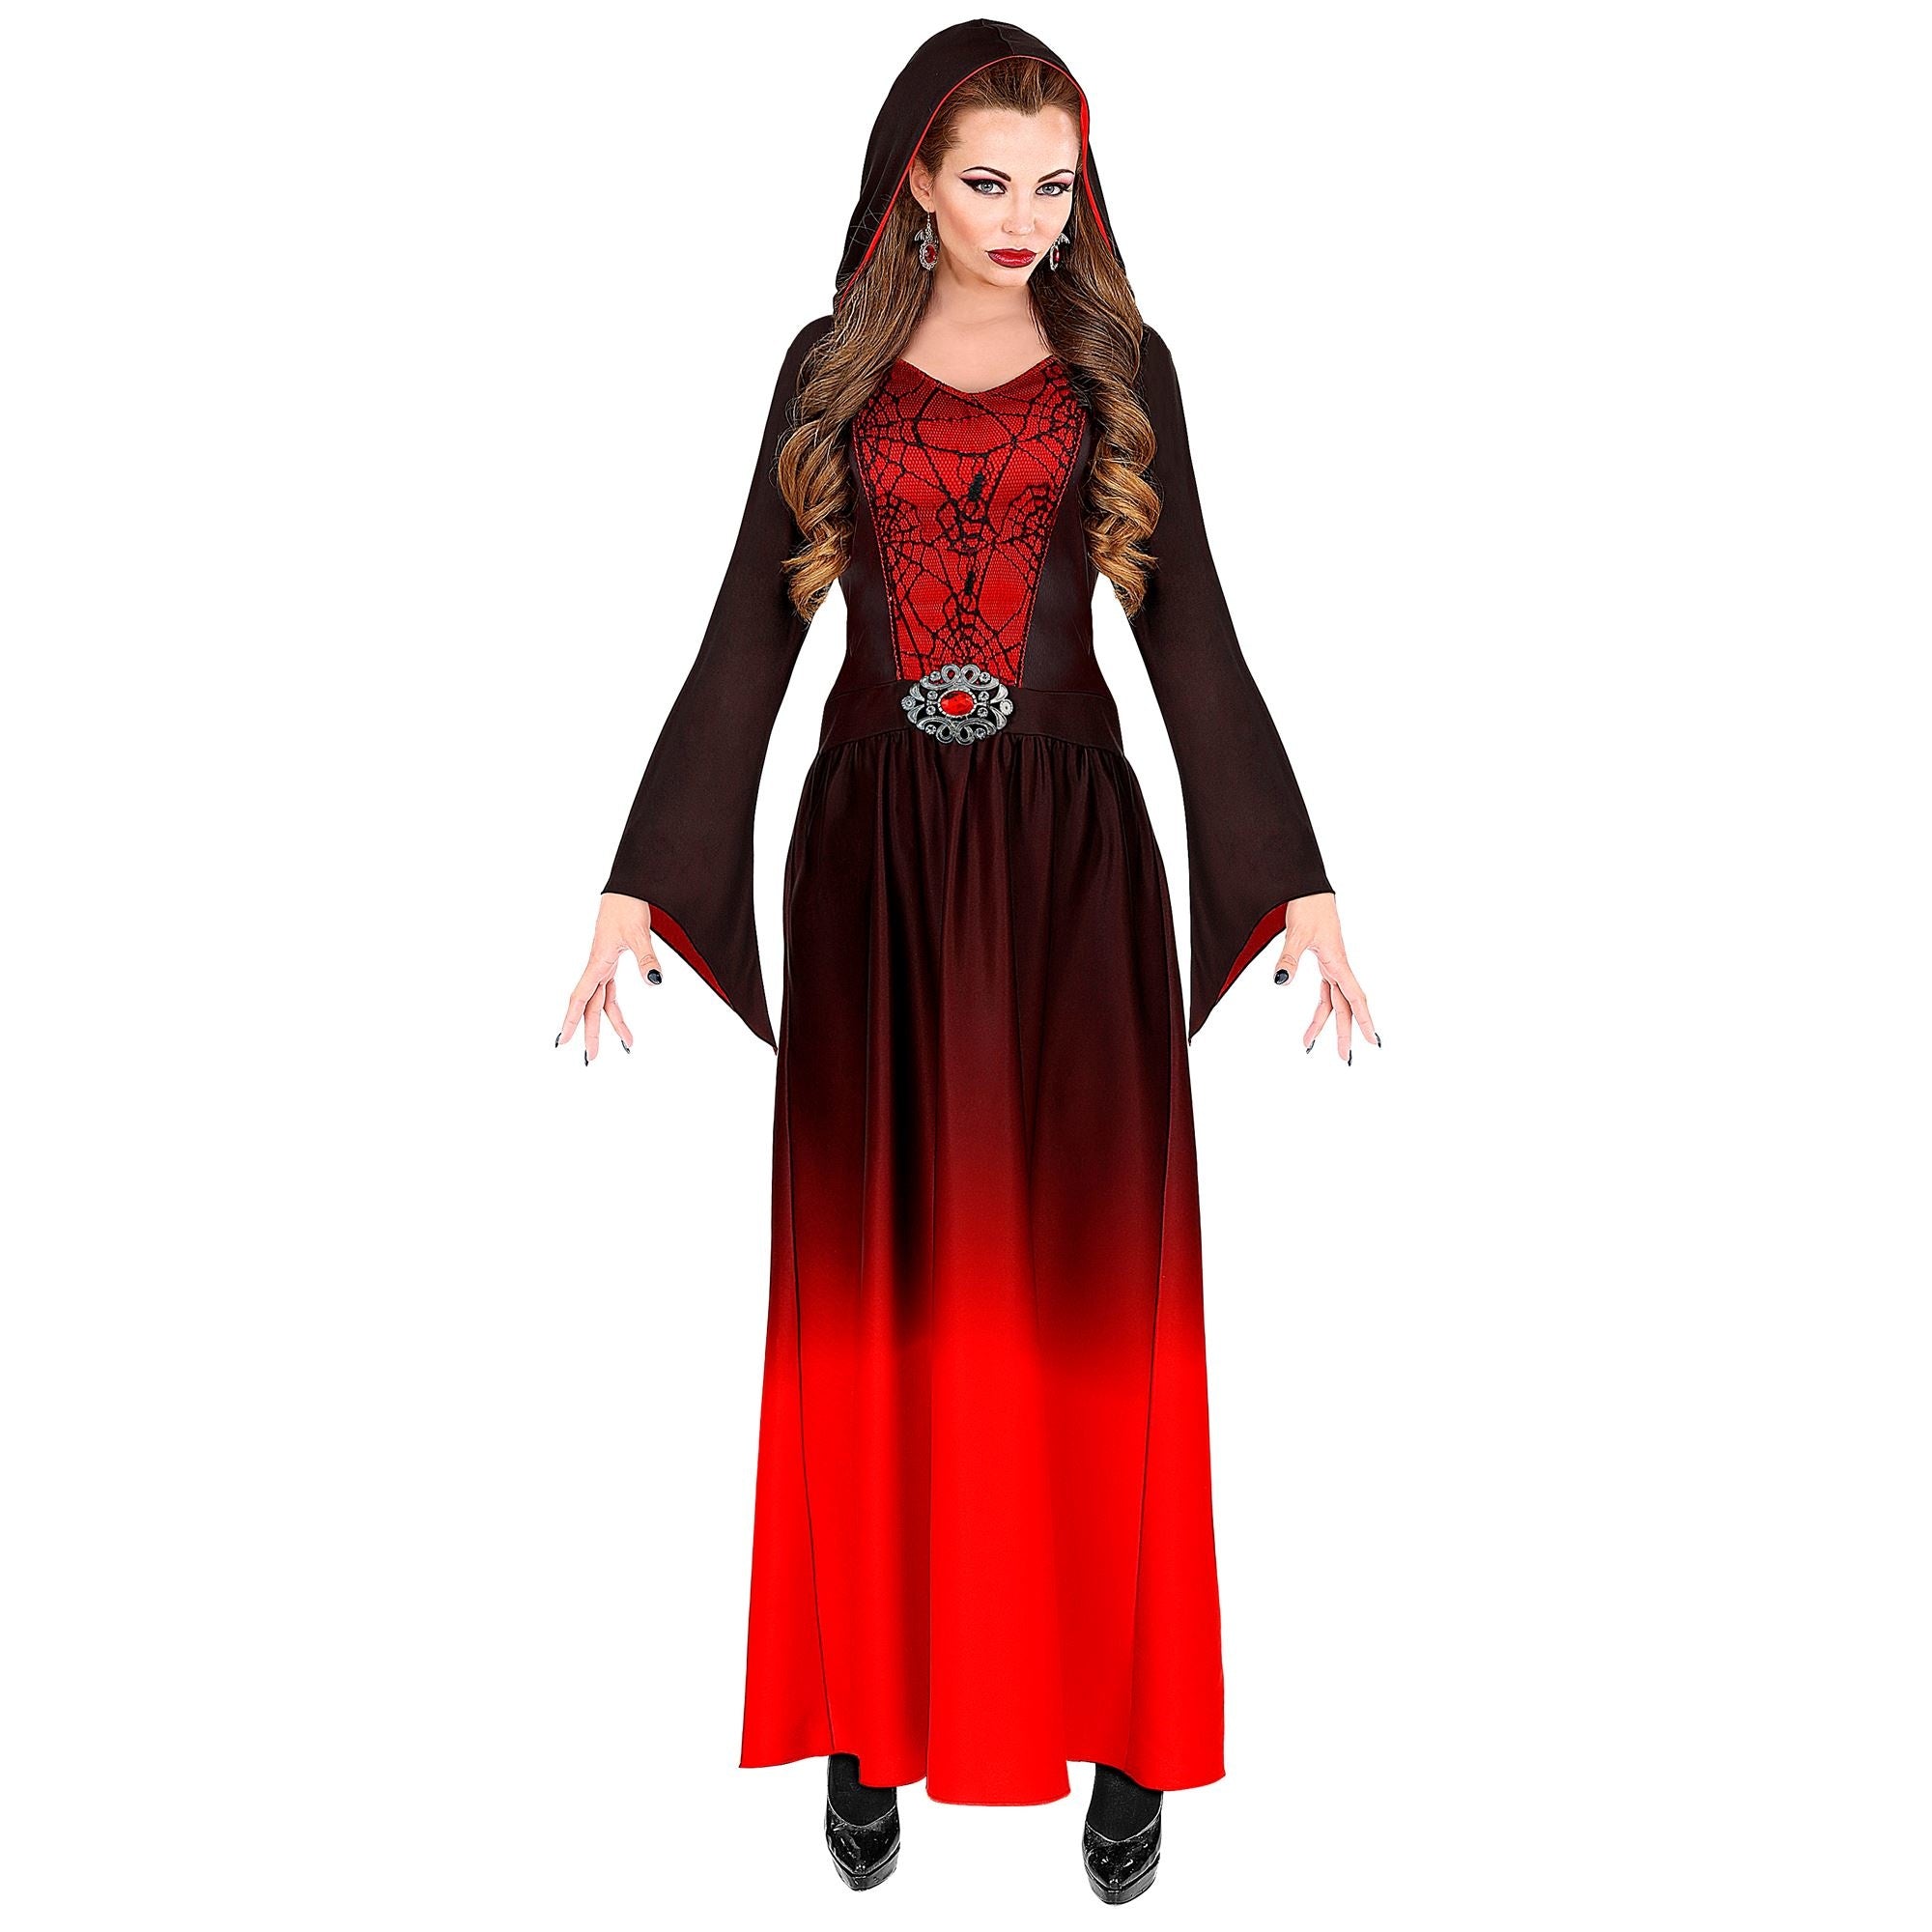 WIDMANN - Rode gothic dame vampier vermomming - M